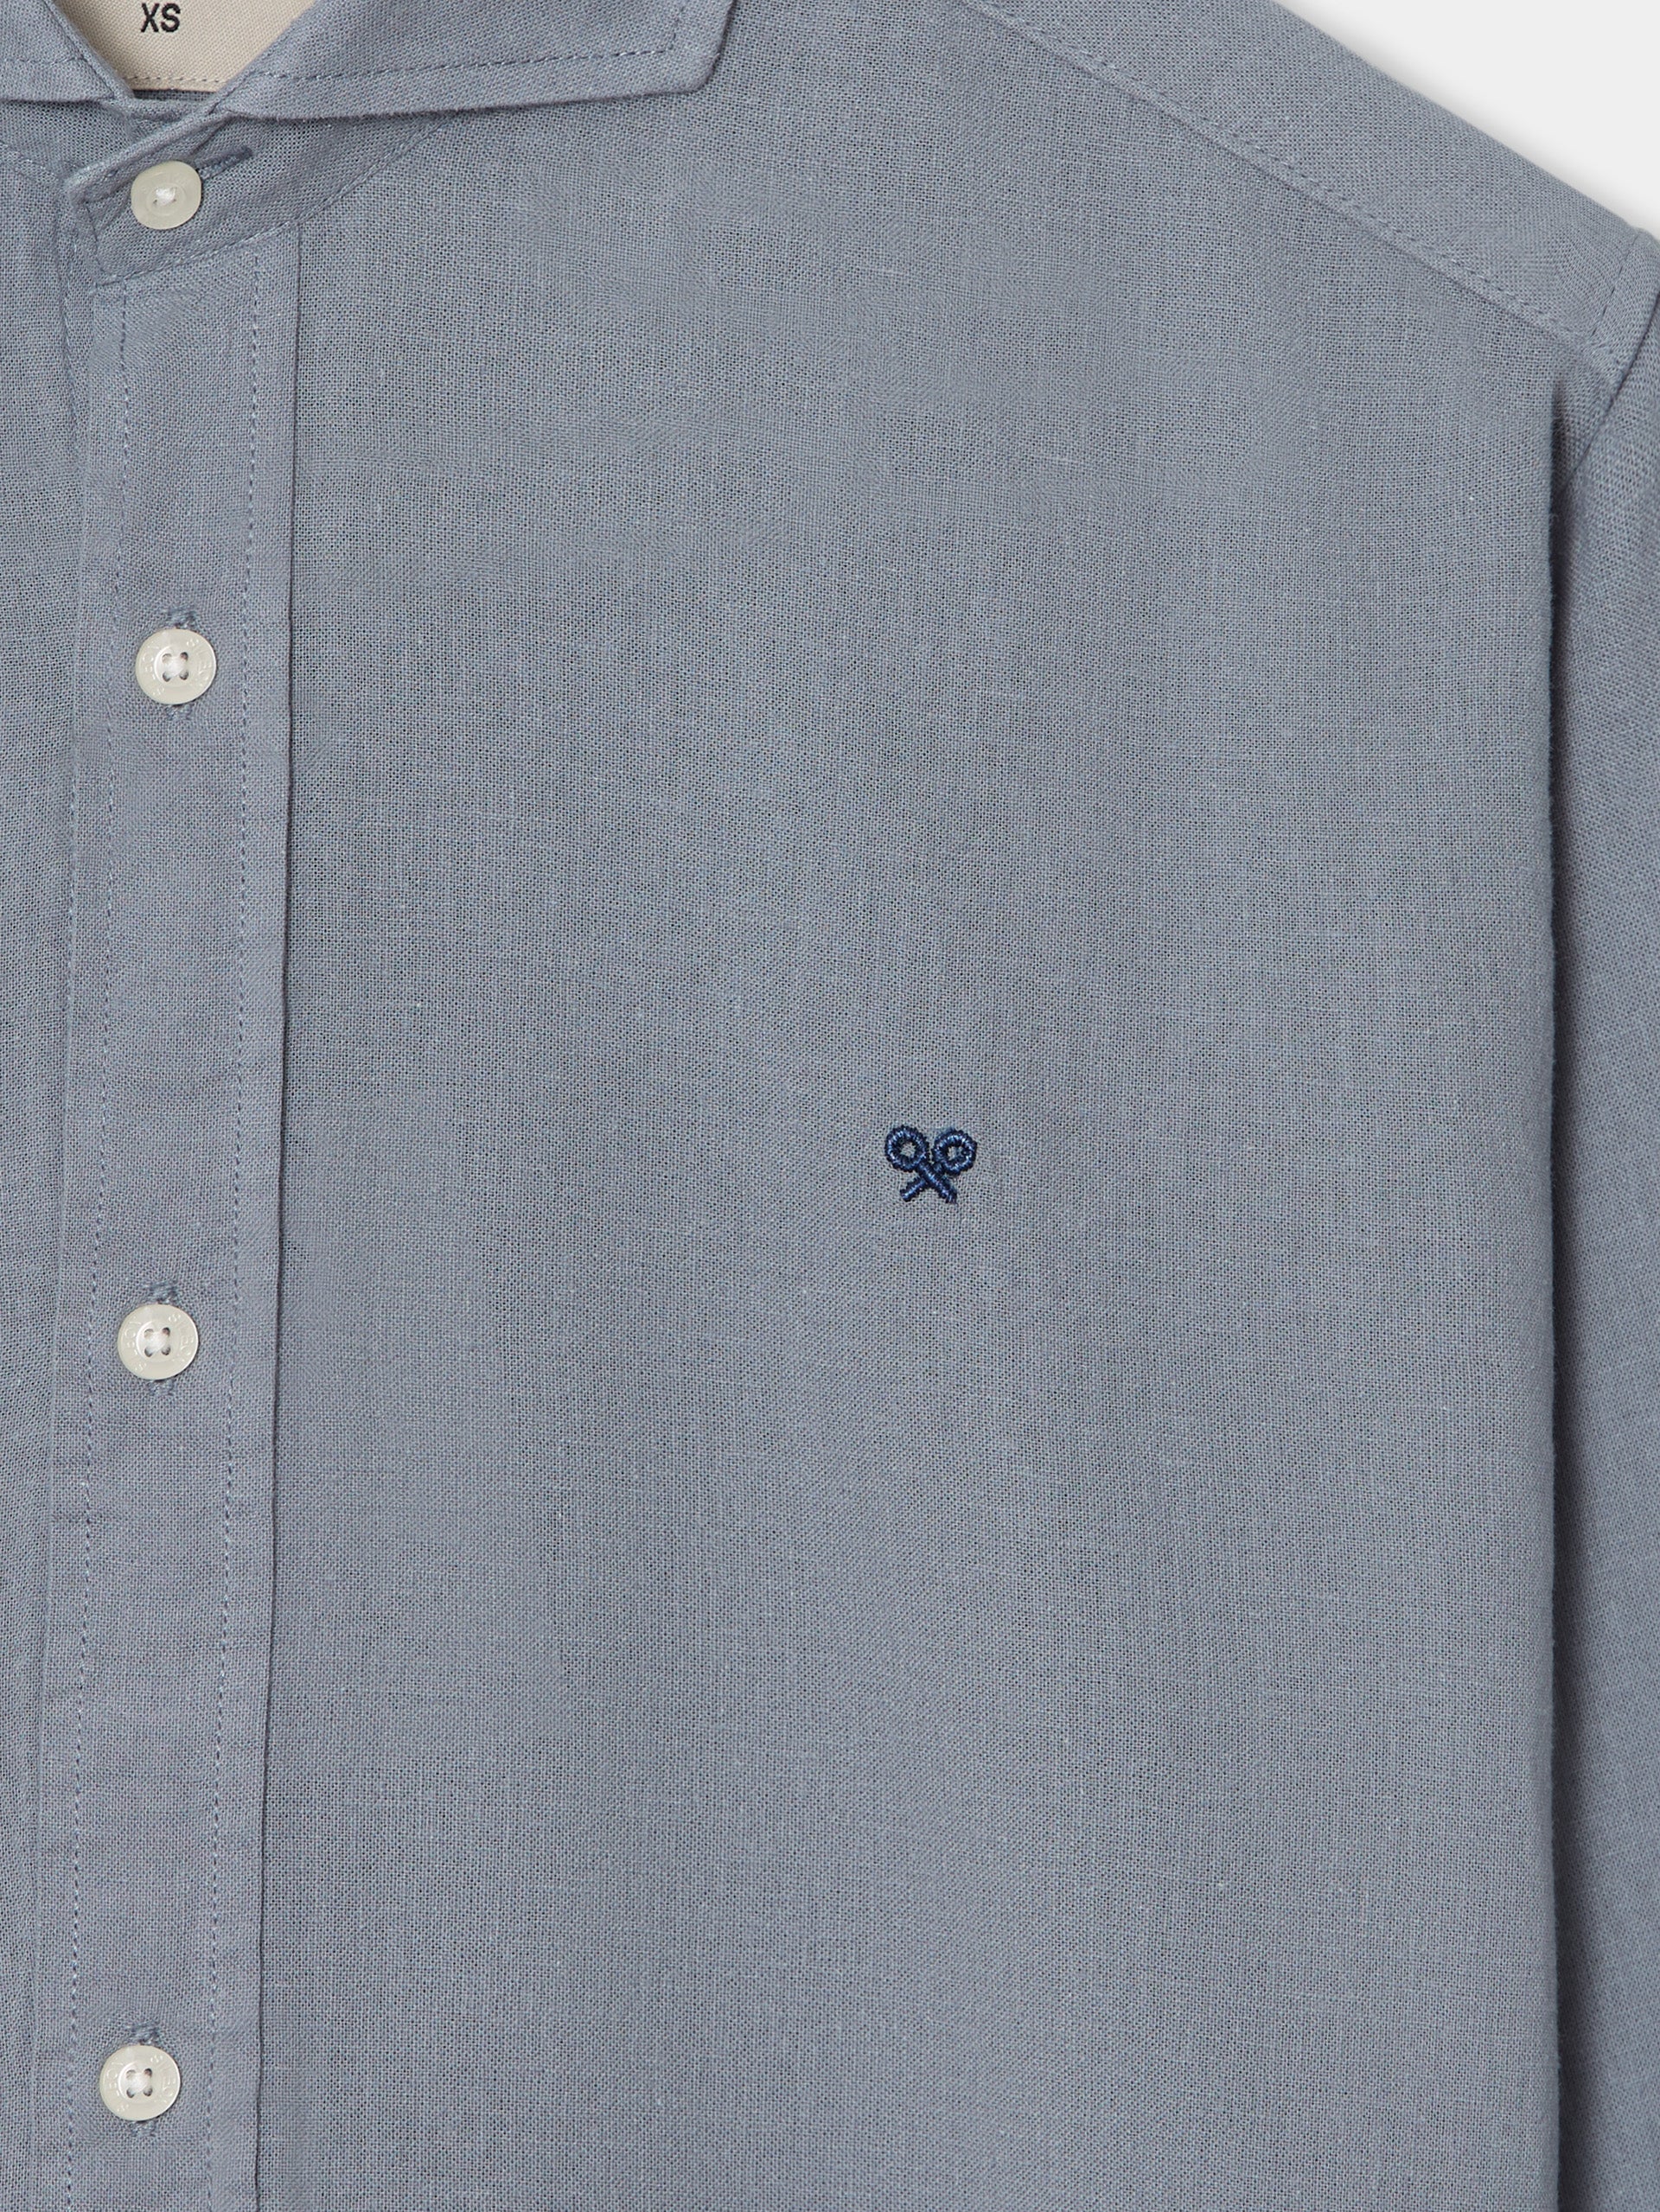 Silbon soft blue gray sport shirt